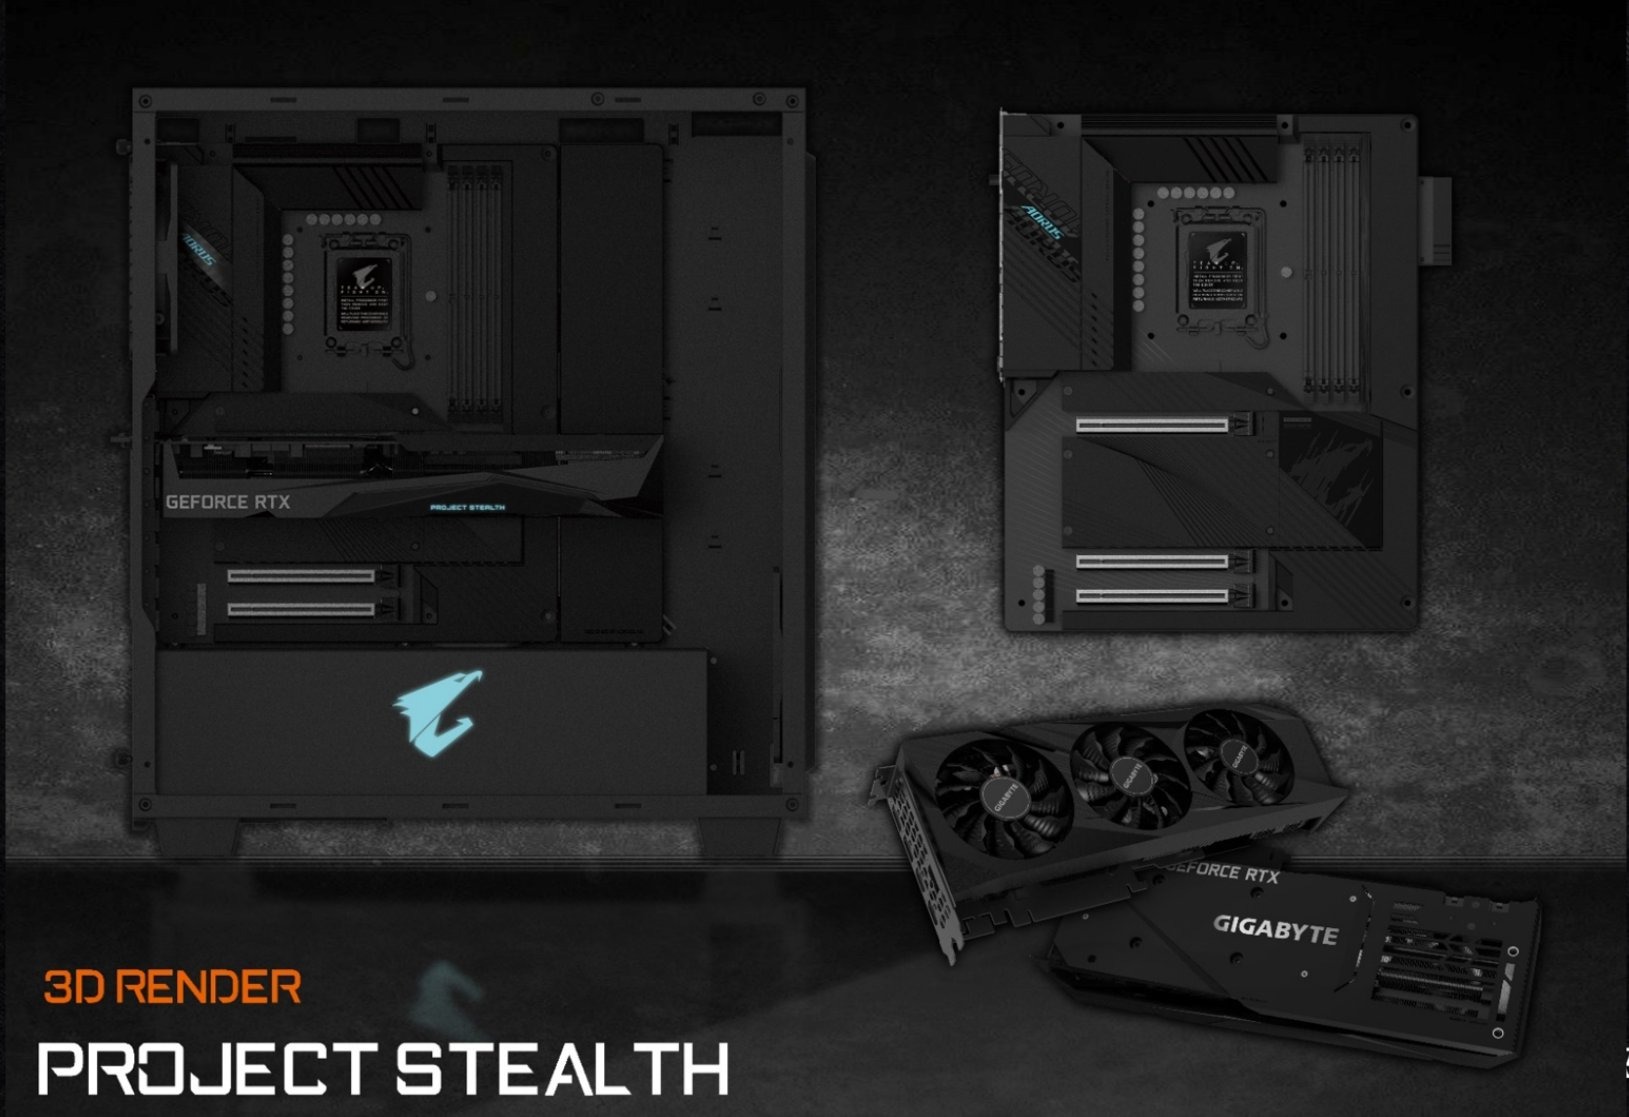 ASUS : Project Stealth, une gamme PC de produits pour rendre vos câbles "invisibles"